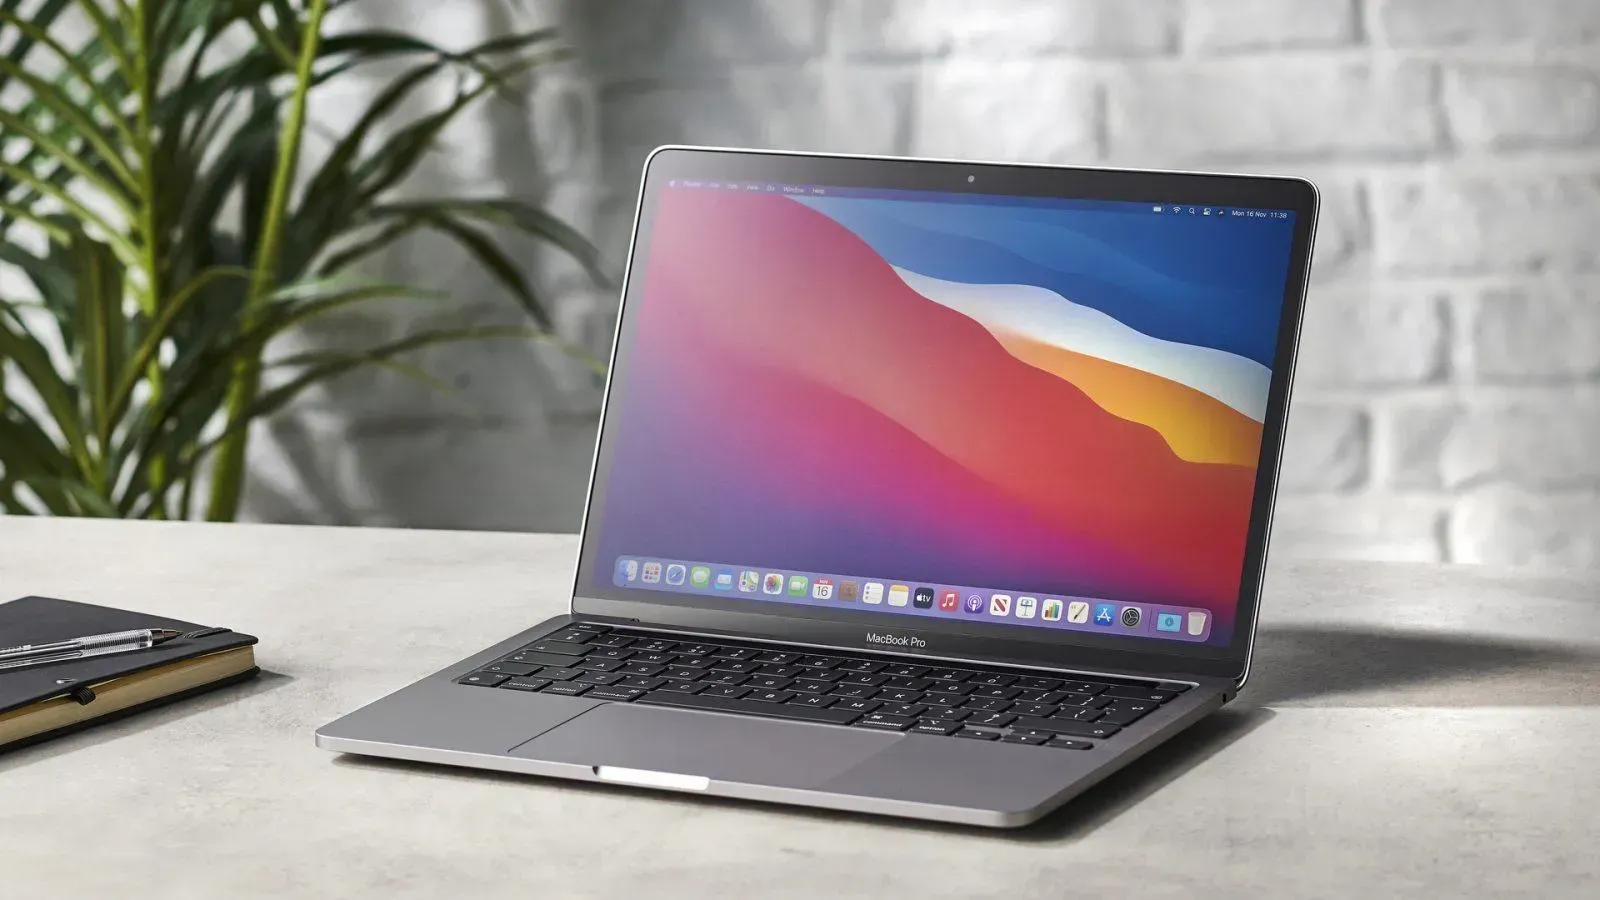 Марк Гурман: Apple представит новые MacBook Pro на специальном мероприятии в этом месяце